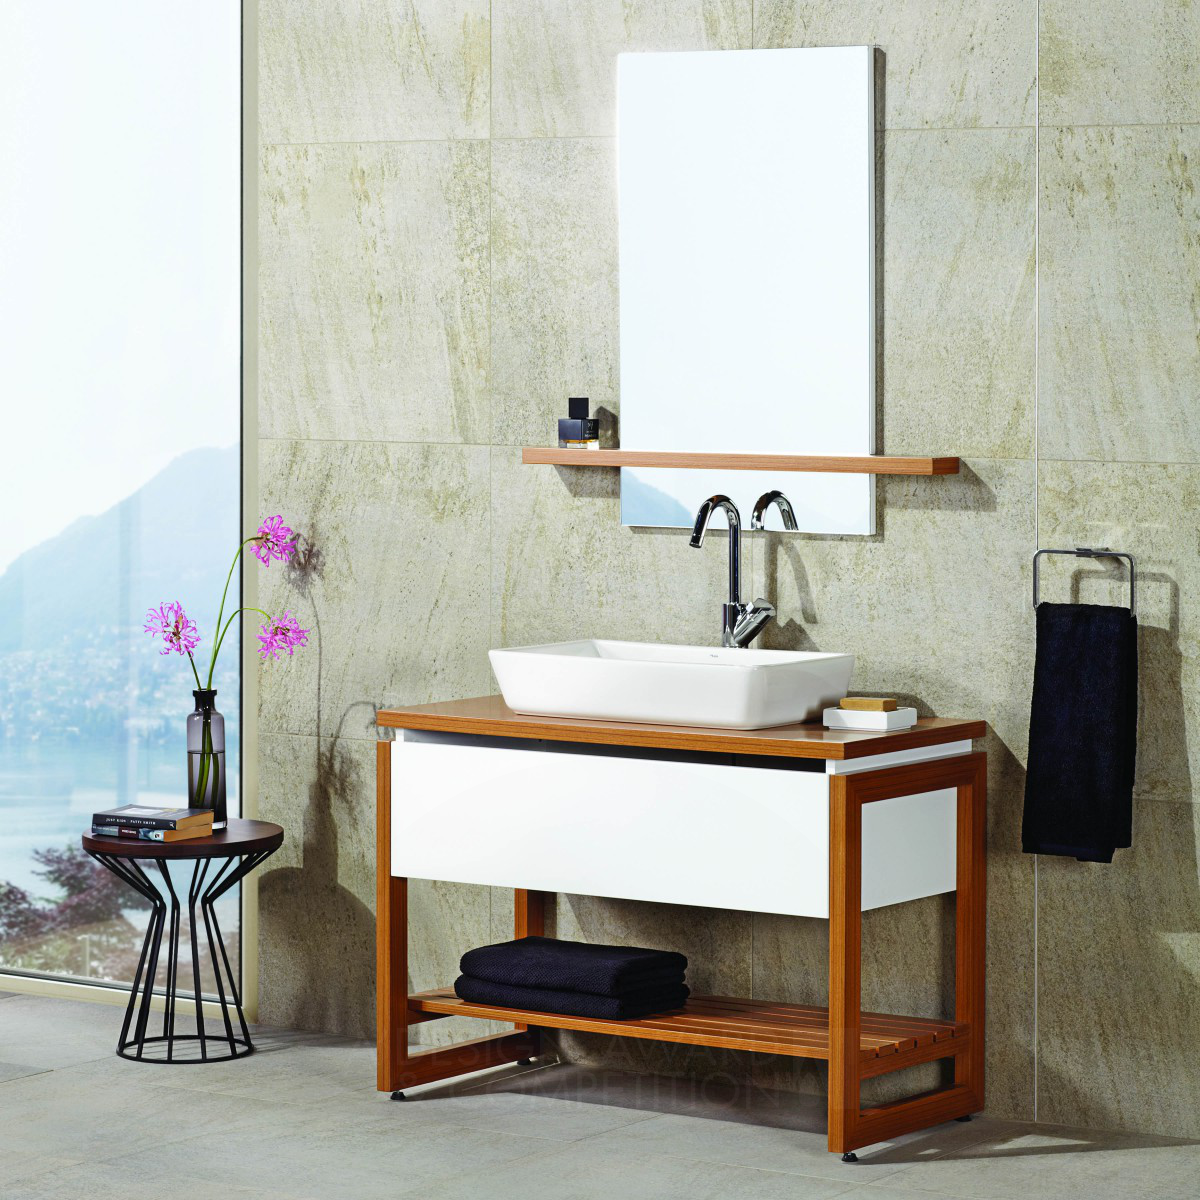 NORDIC Bathroom Furniture Set & Ceramic Tiling by K.i.d (Kale Design & Innovation)